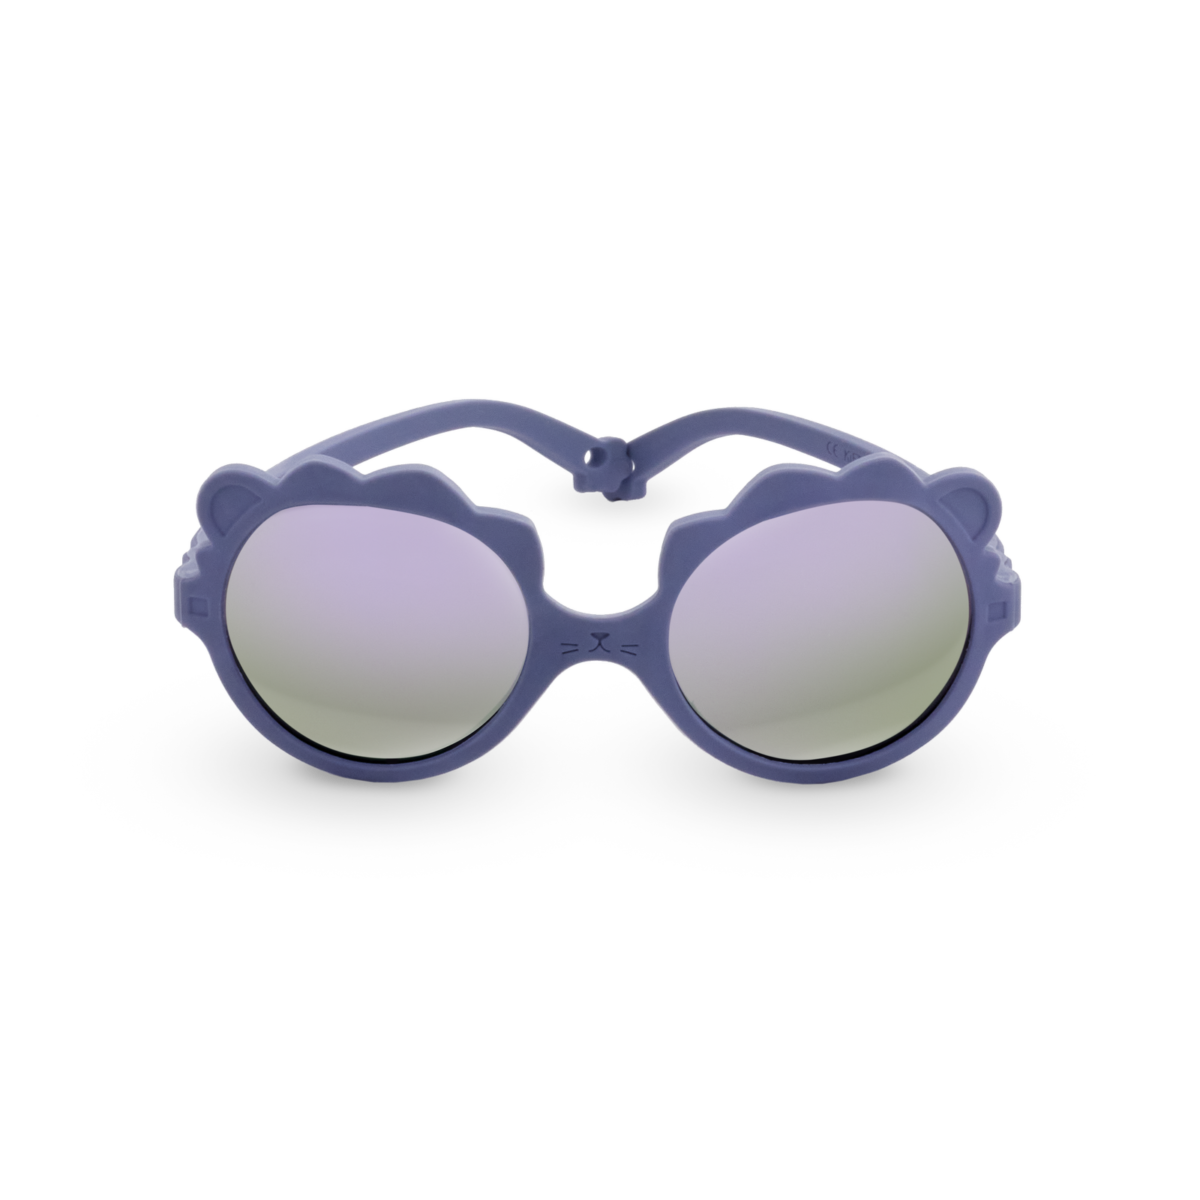 Kietla Okulary Przeciwsłoneczne Lion 2-4 Lilac